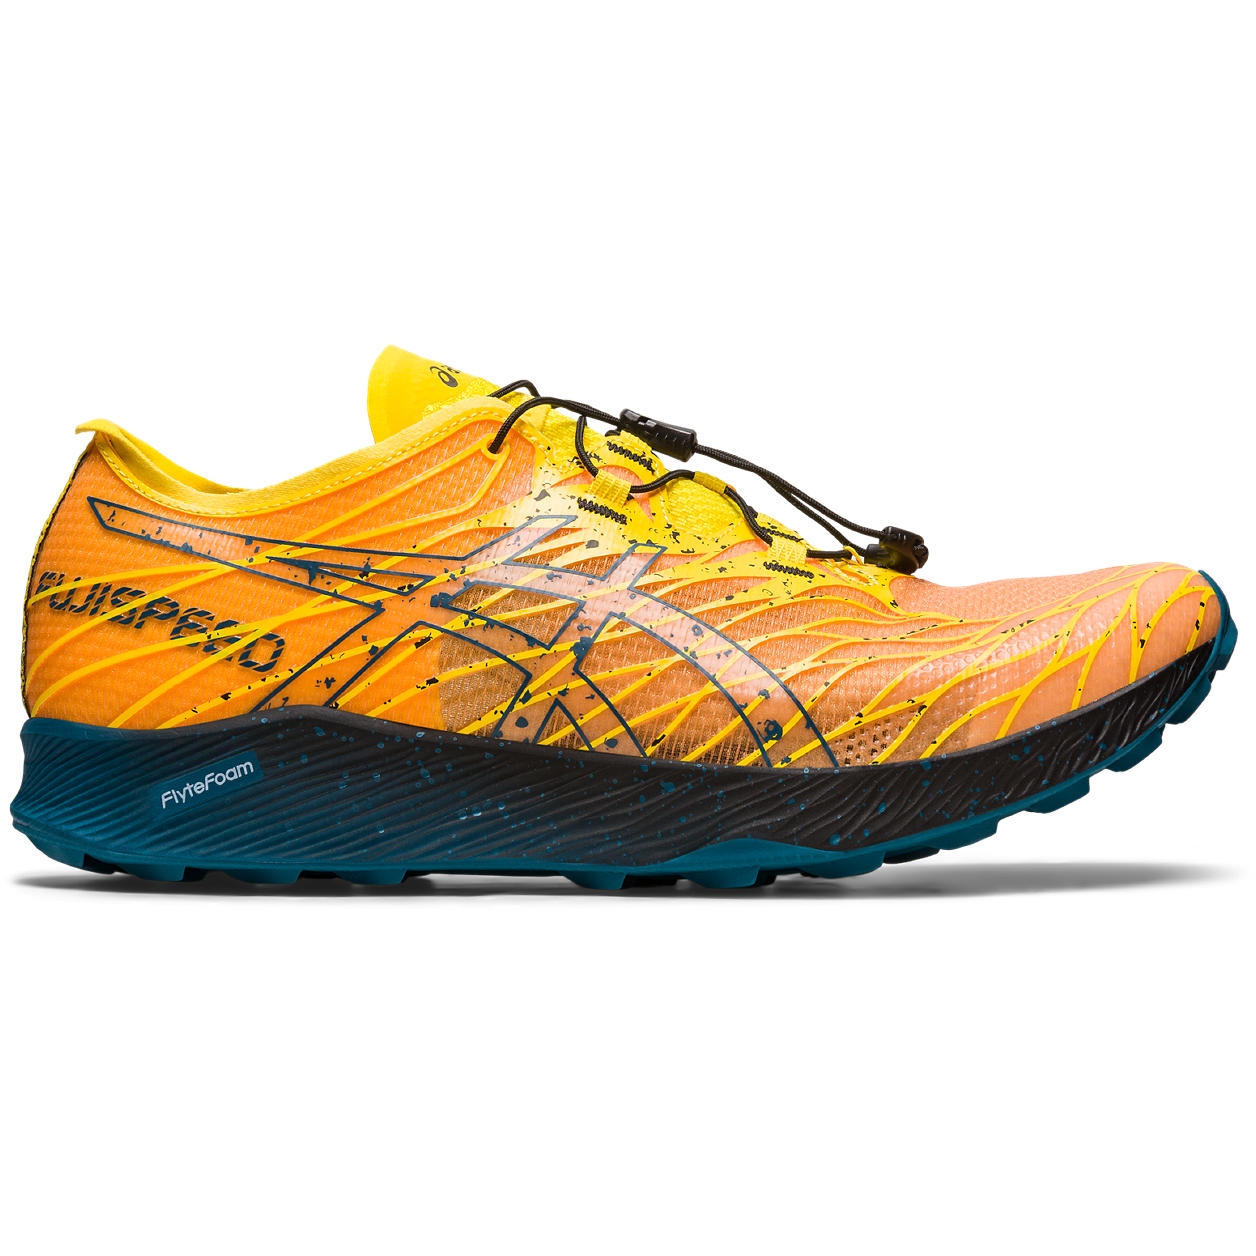 Produktbild von asics Fujispeed Trail Laufschuhe Herren - golden yellow/ink teal